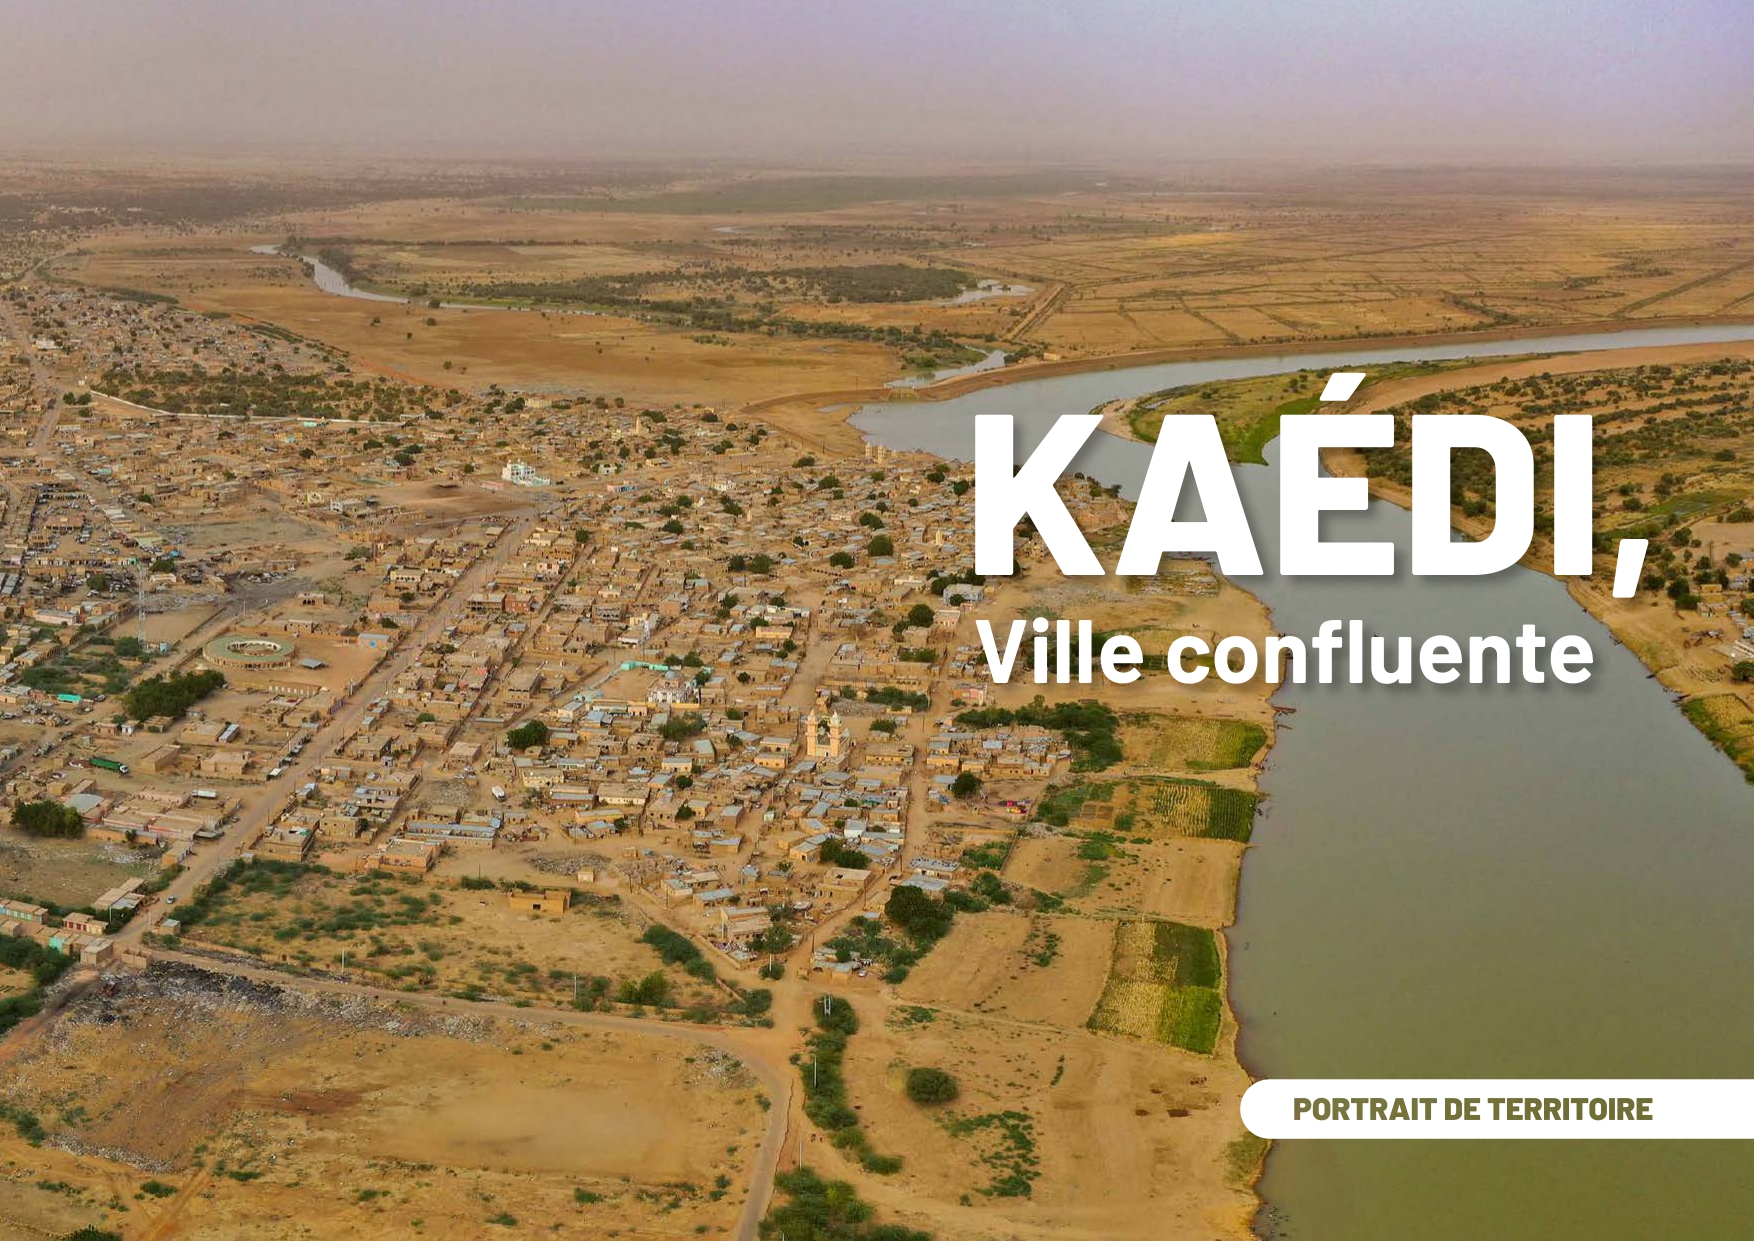 Portrait de territoire - Kaédi, ville confluente